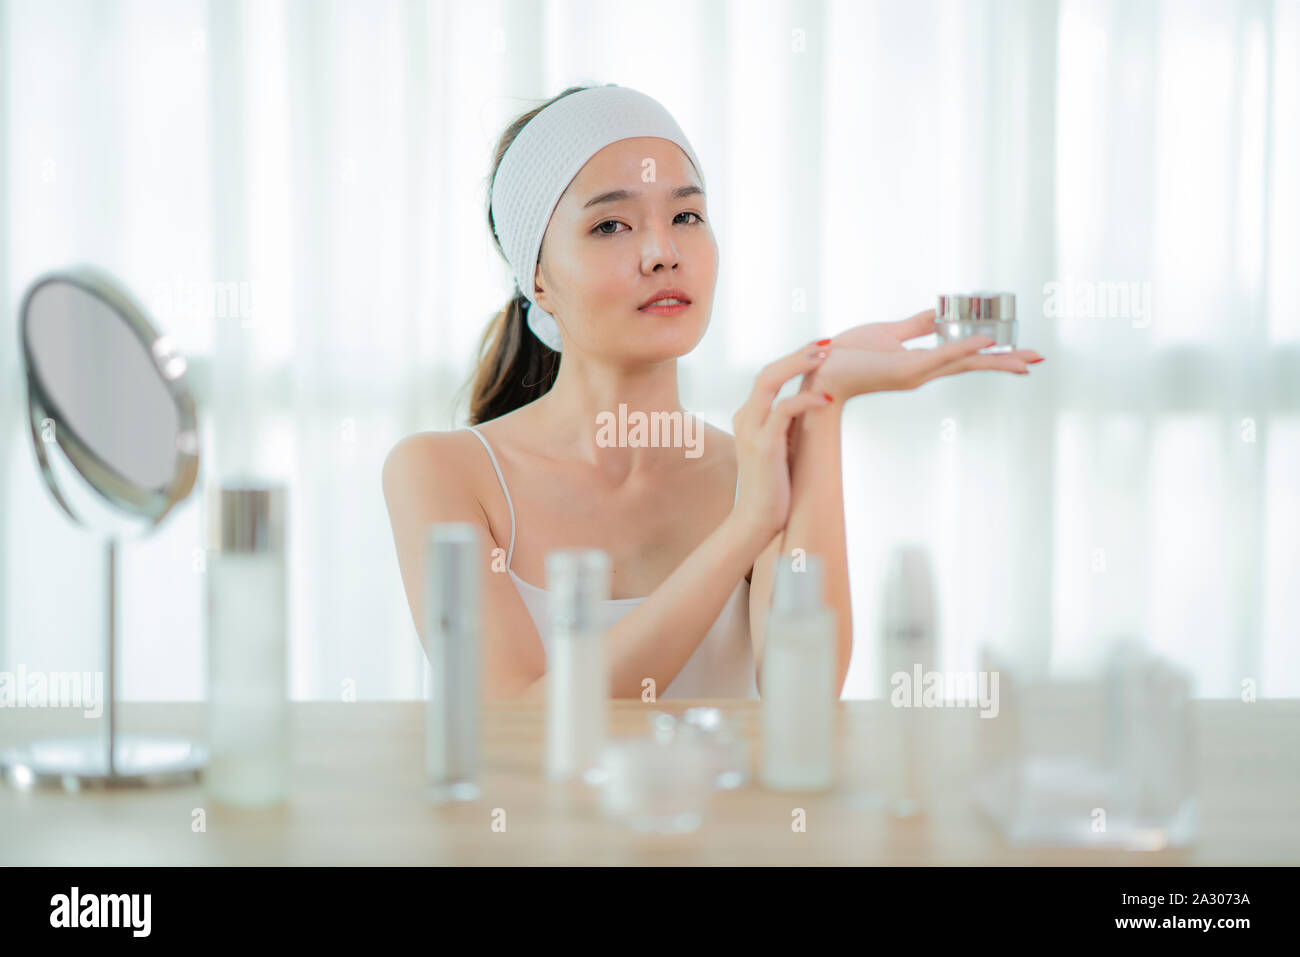 Ritratto di incantevole donna asiatica avente jar con crema per il viso in mano, utilizzando, applicando la lozione, godendo, toccando la sua guancia, con la cura della pelle sulla bottiglia ta Foto Stock